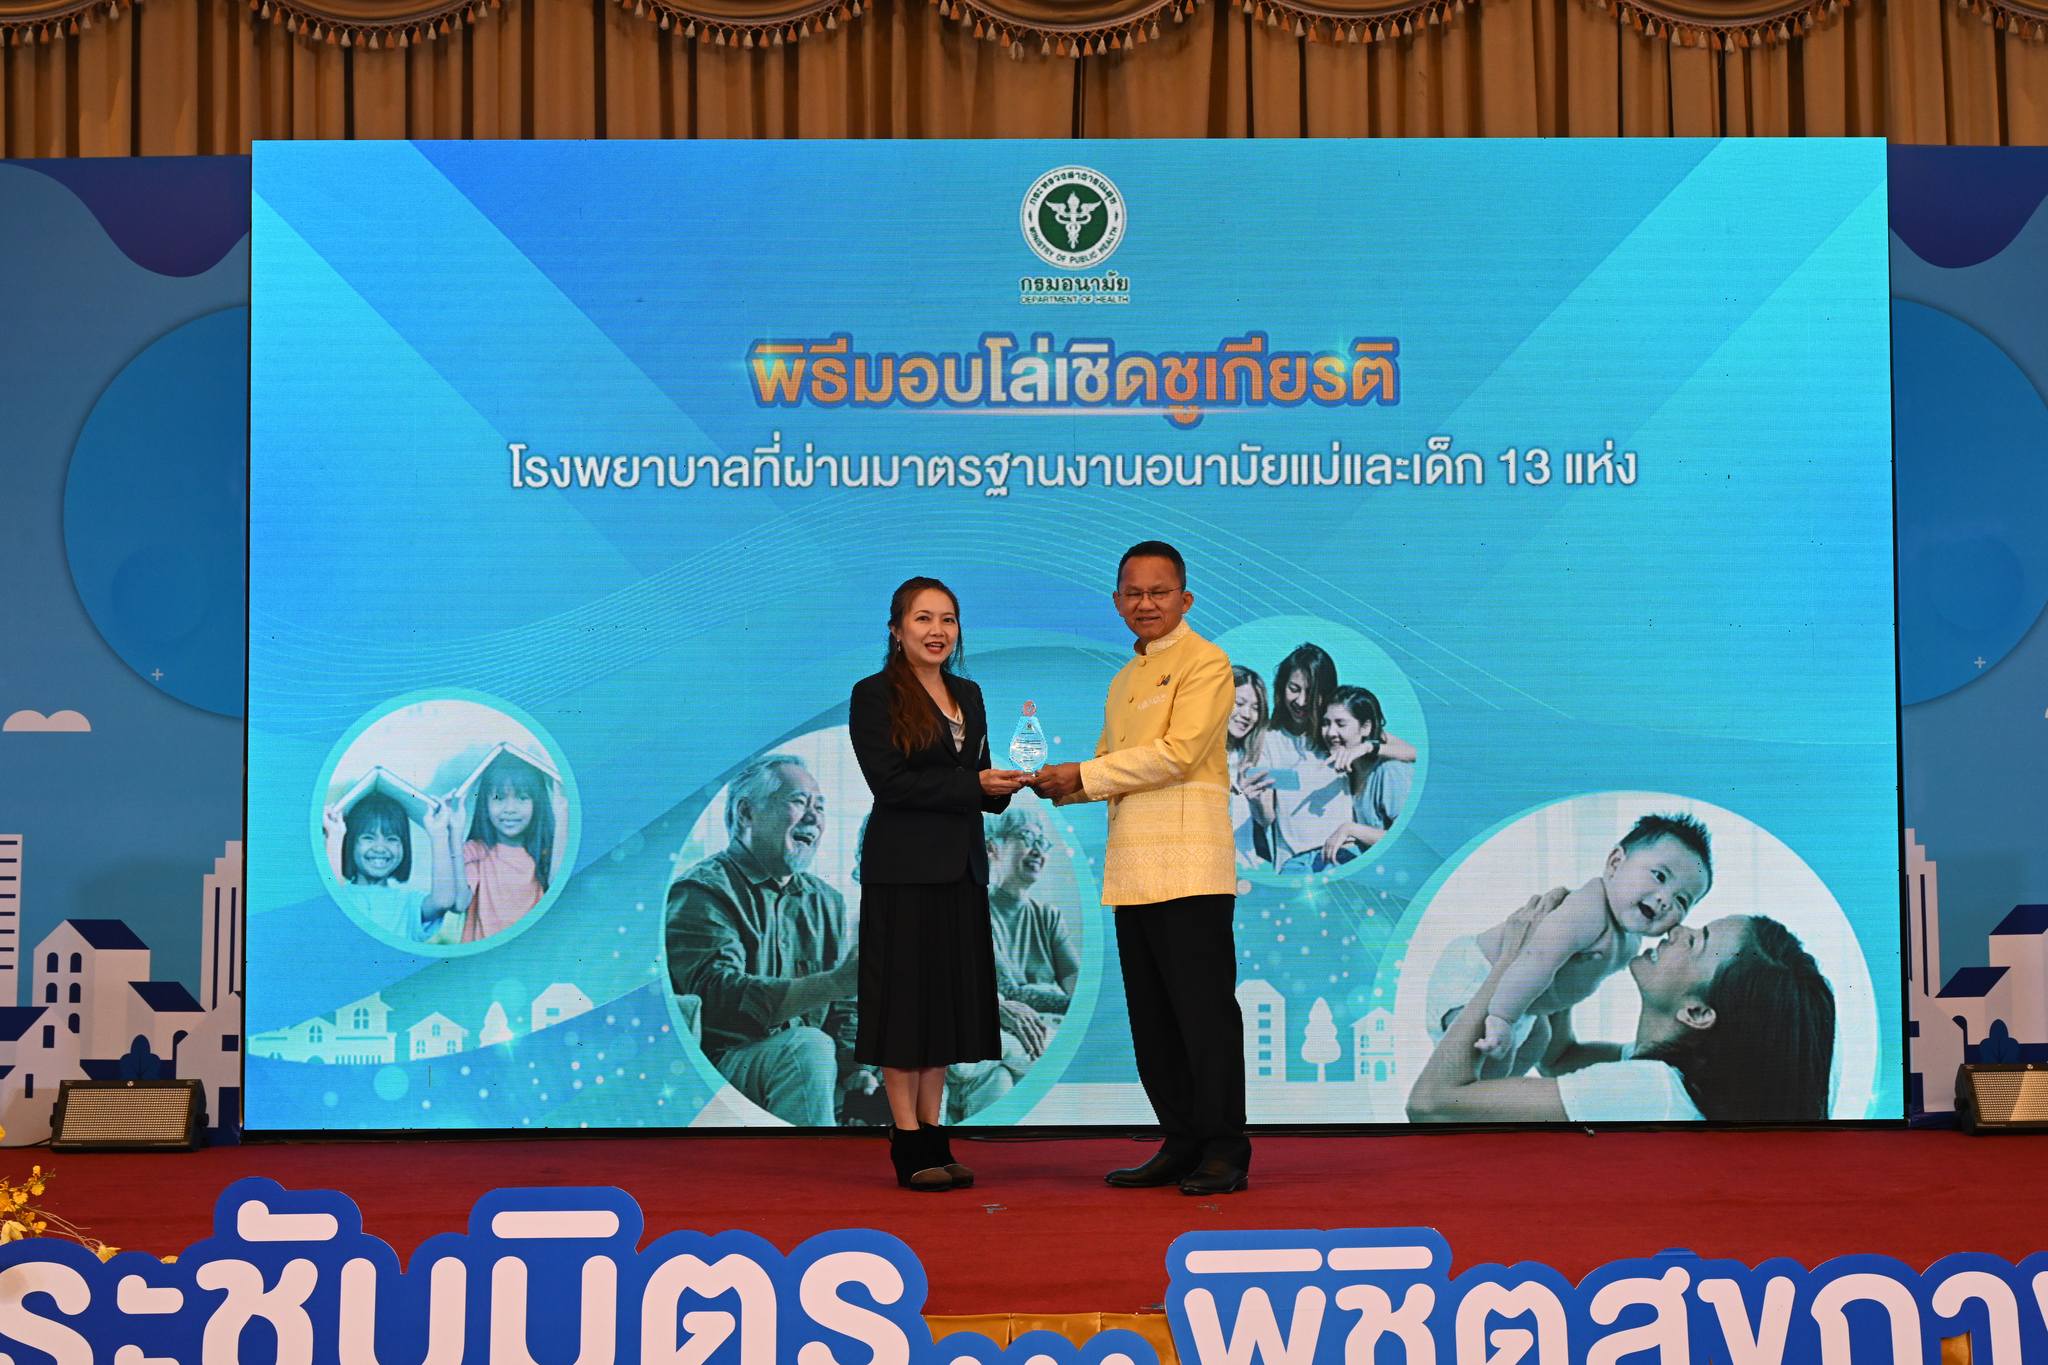  รัฐมนตรีว่าการกระทรวงสาธารณสุข มอบรางวัล โรงพยาบาลเครือข่ายส่งเสริมสุขภาพแม่และเด็ก ให้กับโรงพยาบาลเจริญกรุงประชารักษ์ 